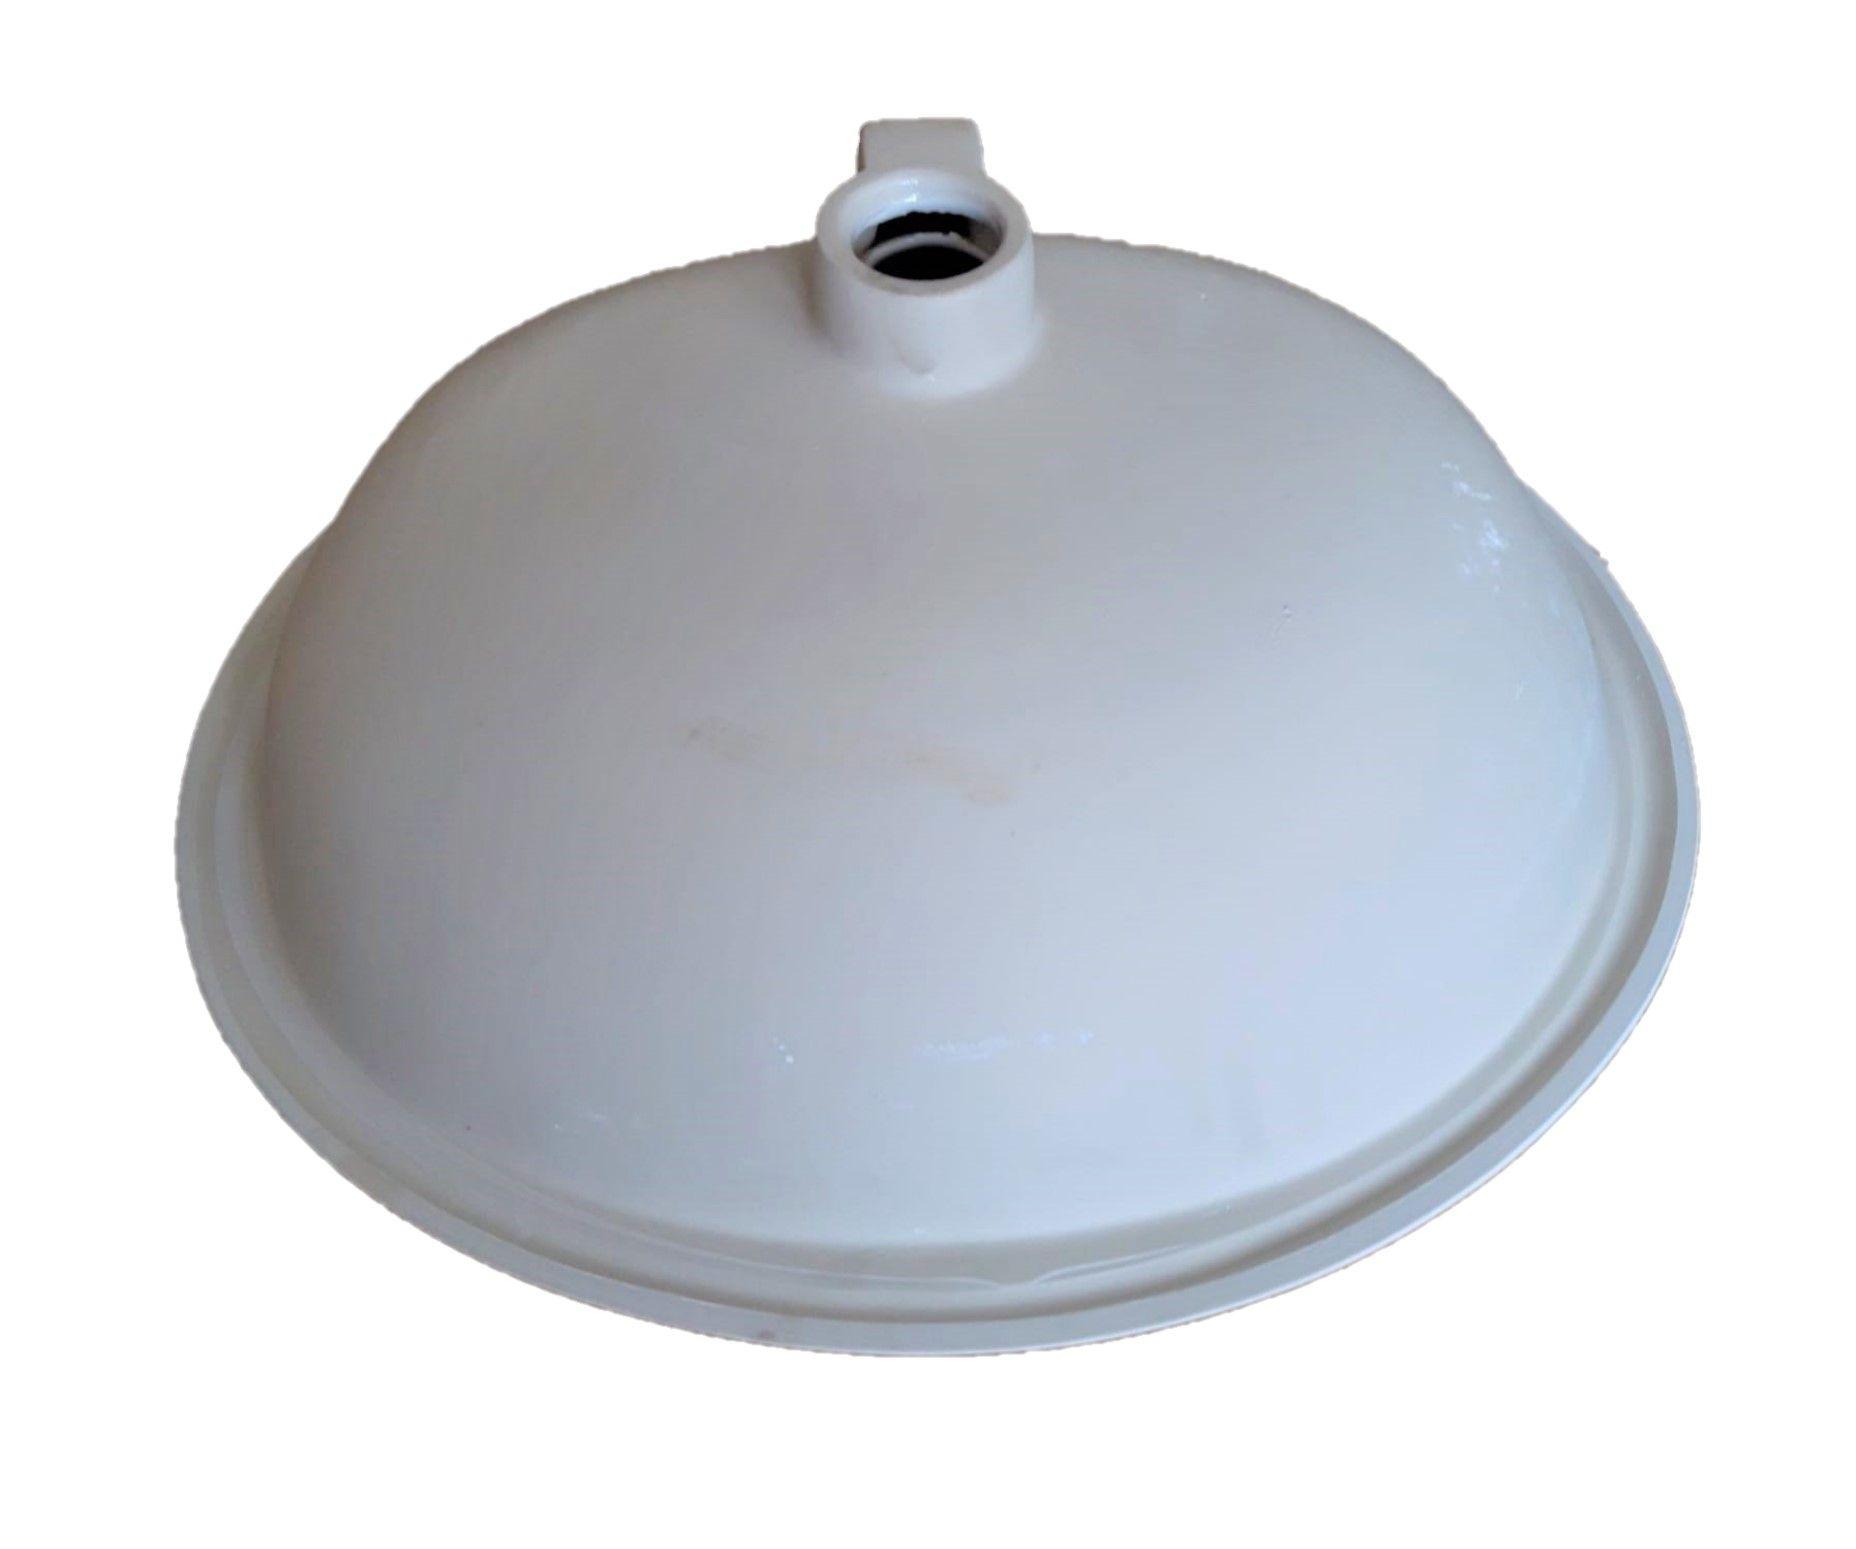 Lavabo Soprapiano Alice da incasso in ceramica bianca misure L 56,5 cm H 20,5 cm P 48,5 cm con Troppopieno monoforo predisposto a tre fori